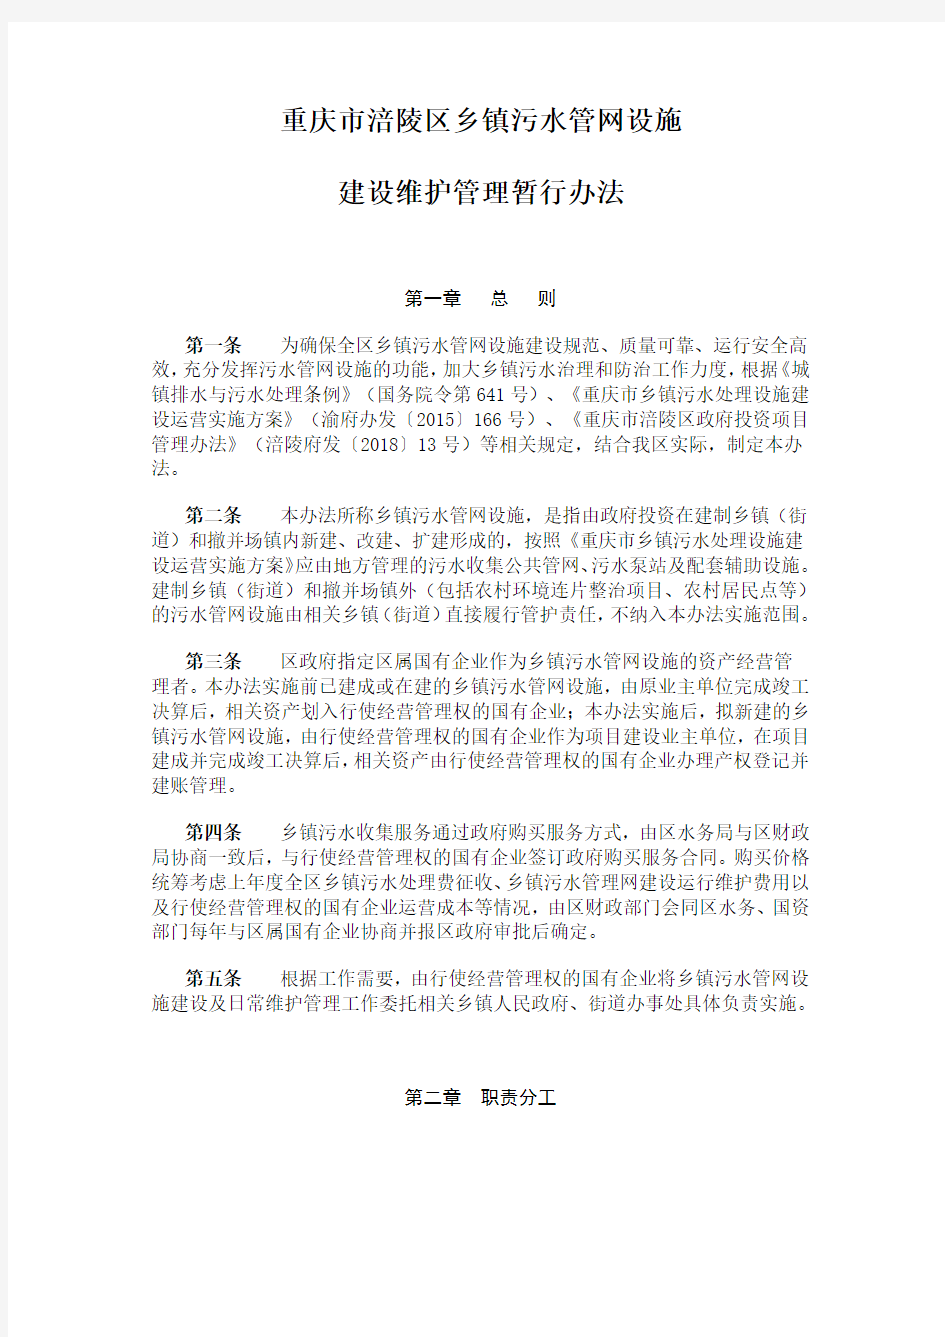 重庆市涪陵区乡镇污水管网设施建设维护管理暂行办法